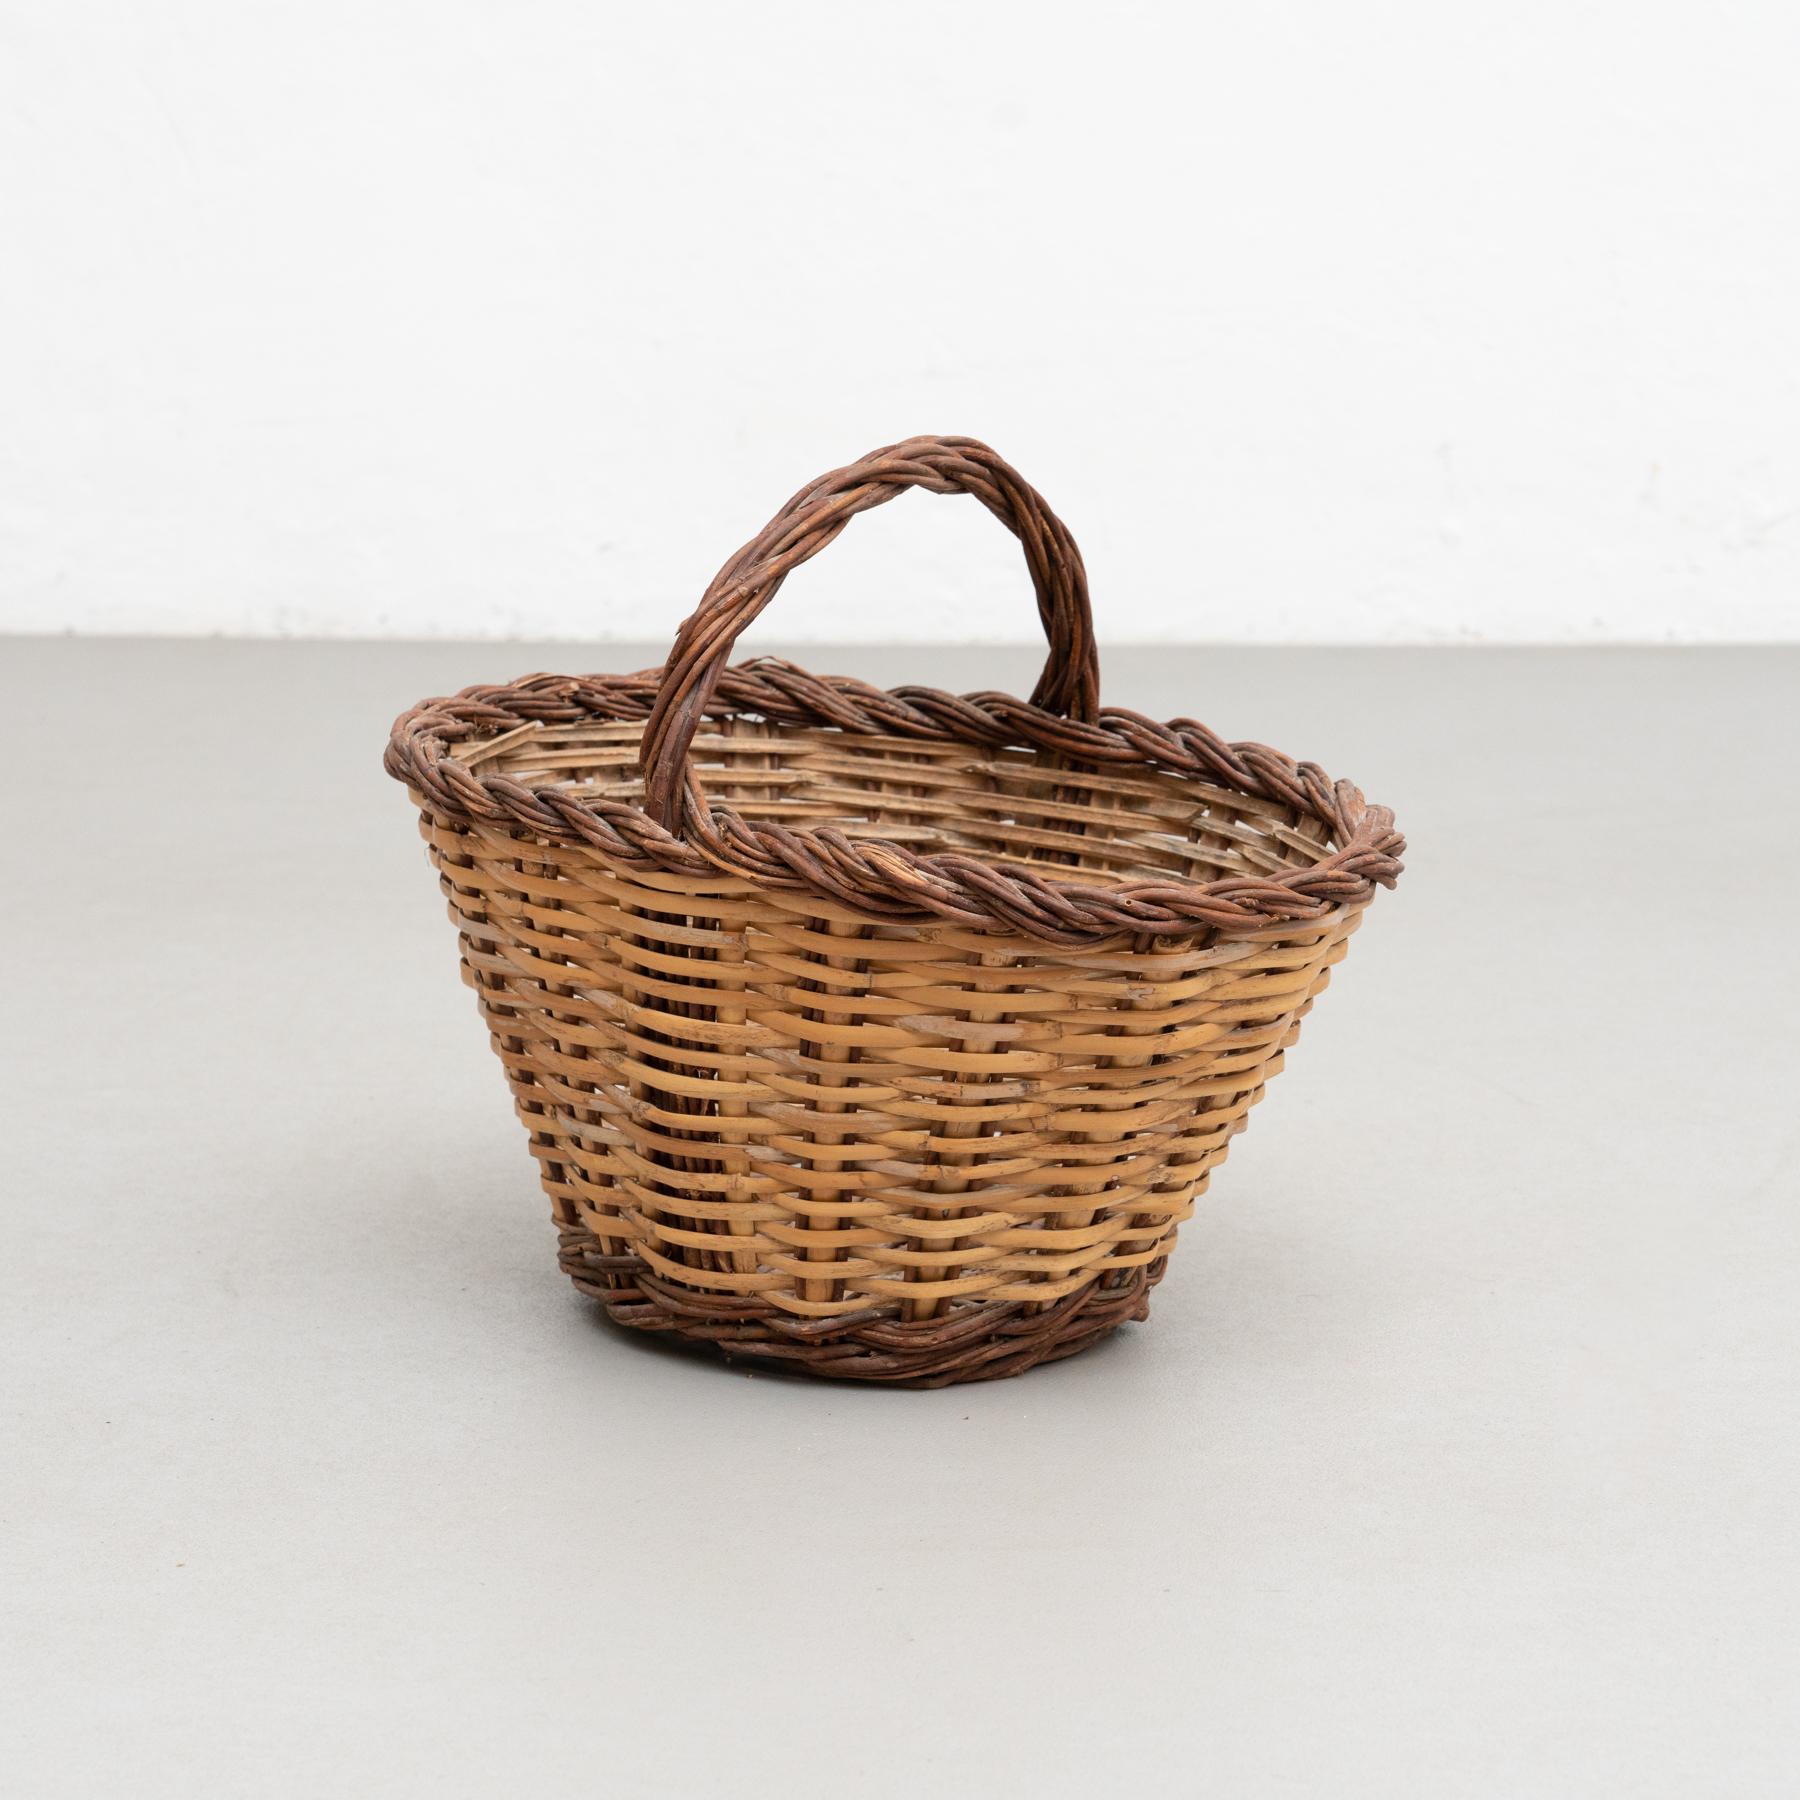 Traditioneller Picknickkorb aus Weidengeflecht mit klassischem Muster.

Hergestellt von einem unbekannten Hersteller, in Frankreich, um 1940

Materialien:
Weide.

Originaler Zustand mit geringen alters- und gebrauchsbedingten